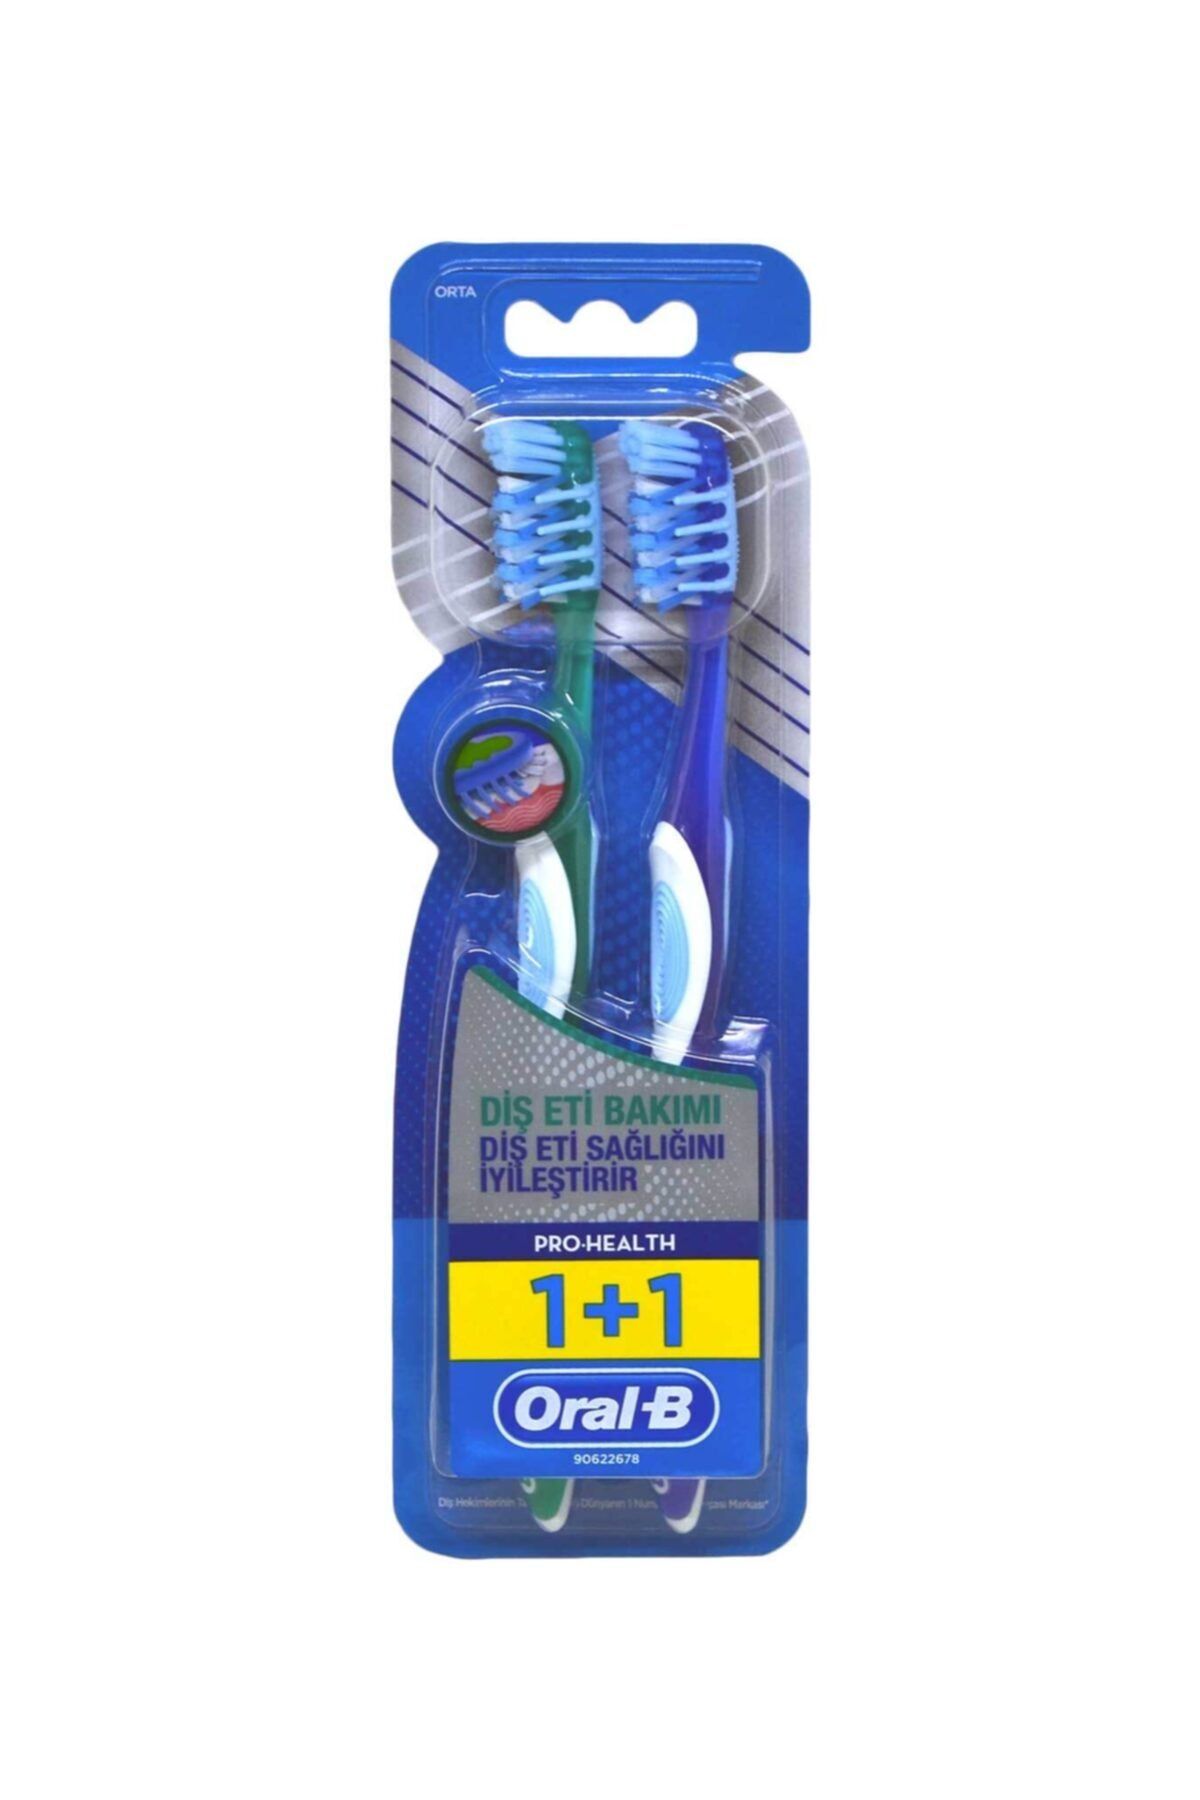 Oral-B Oral B Pro Health Diş Eti Bakımı 1+1 Diş Fırçası